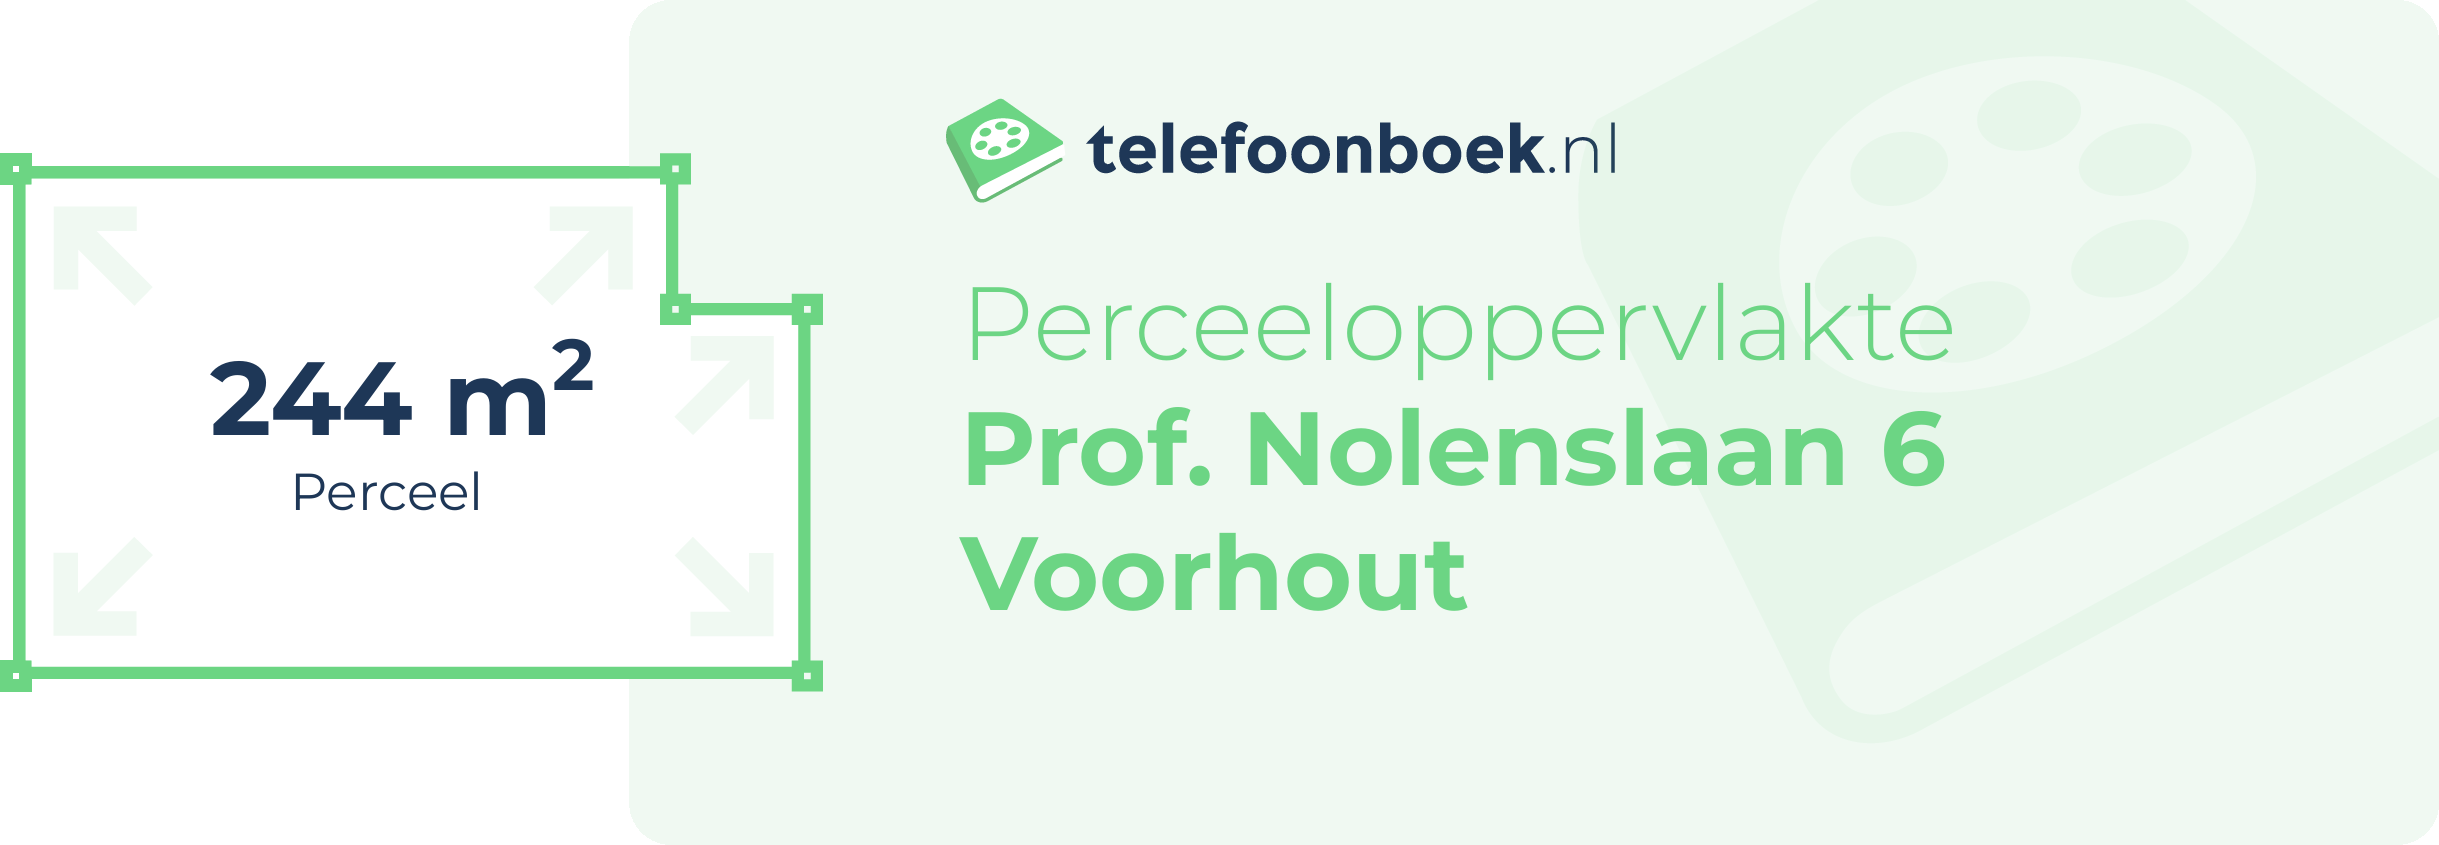 Perceeloppervlakte Prof. Nolenslaan 6 Voorhout